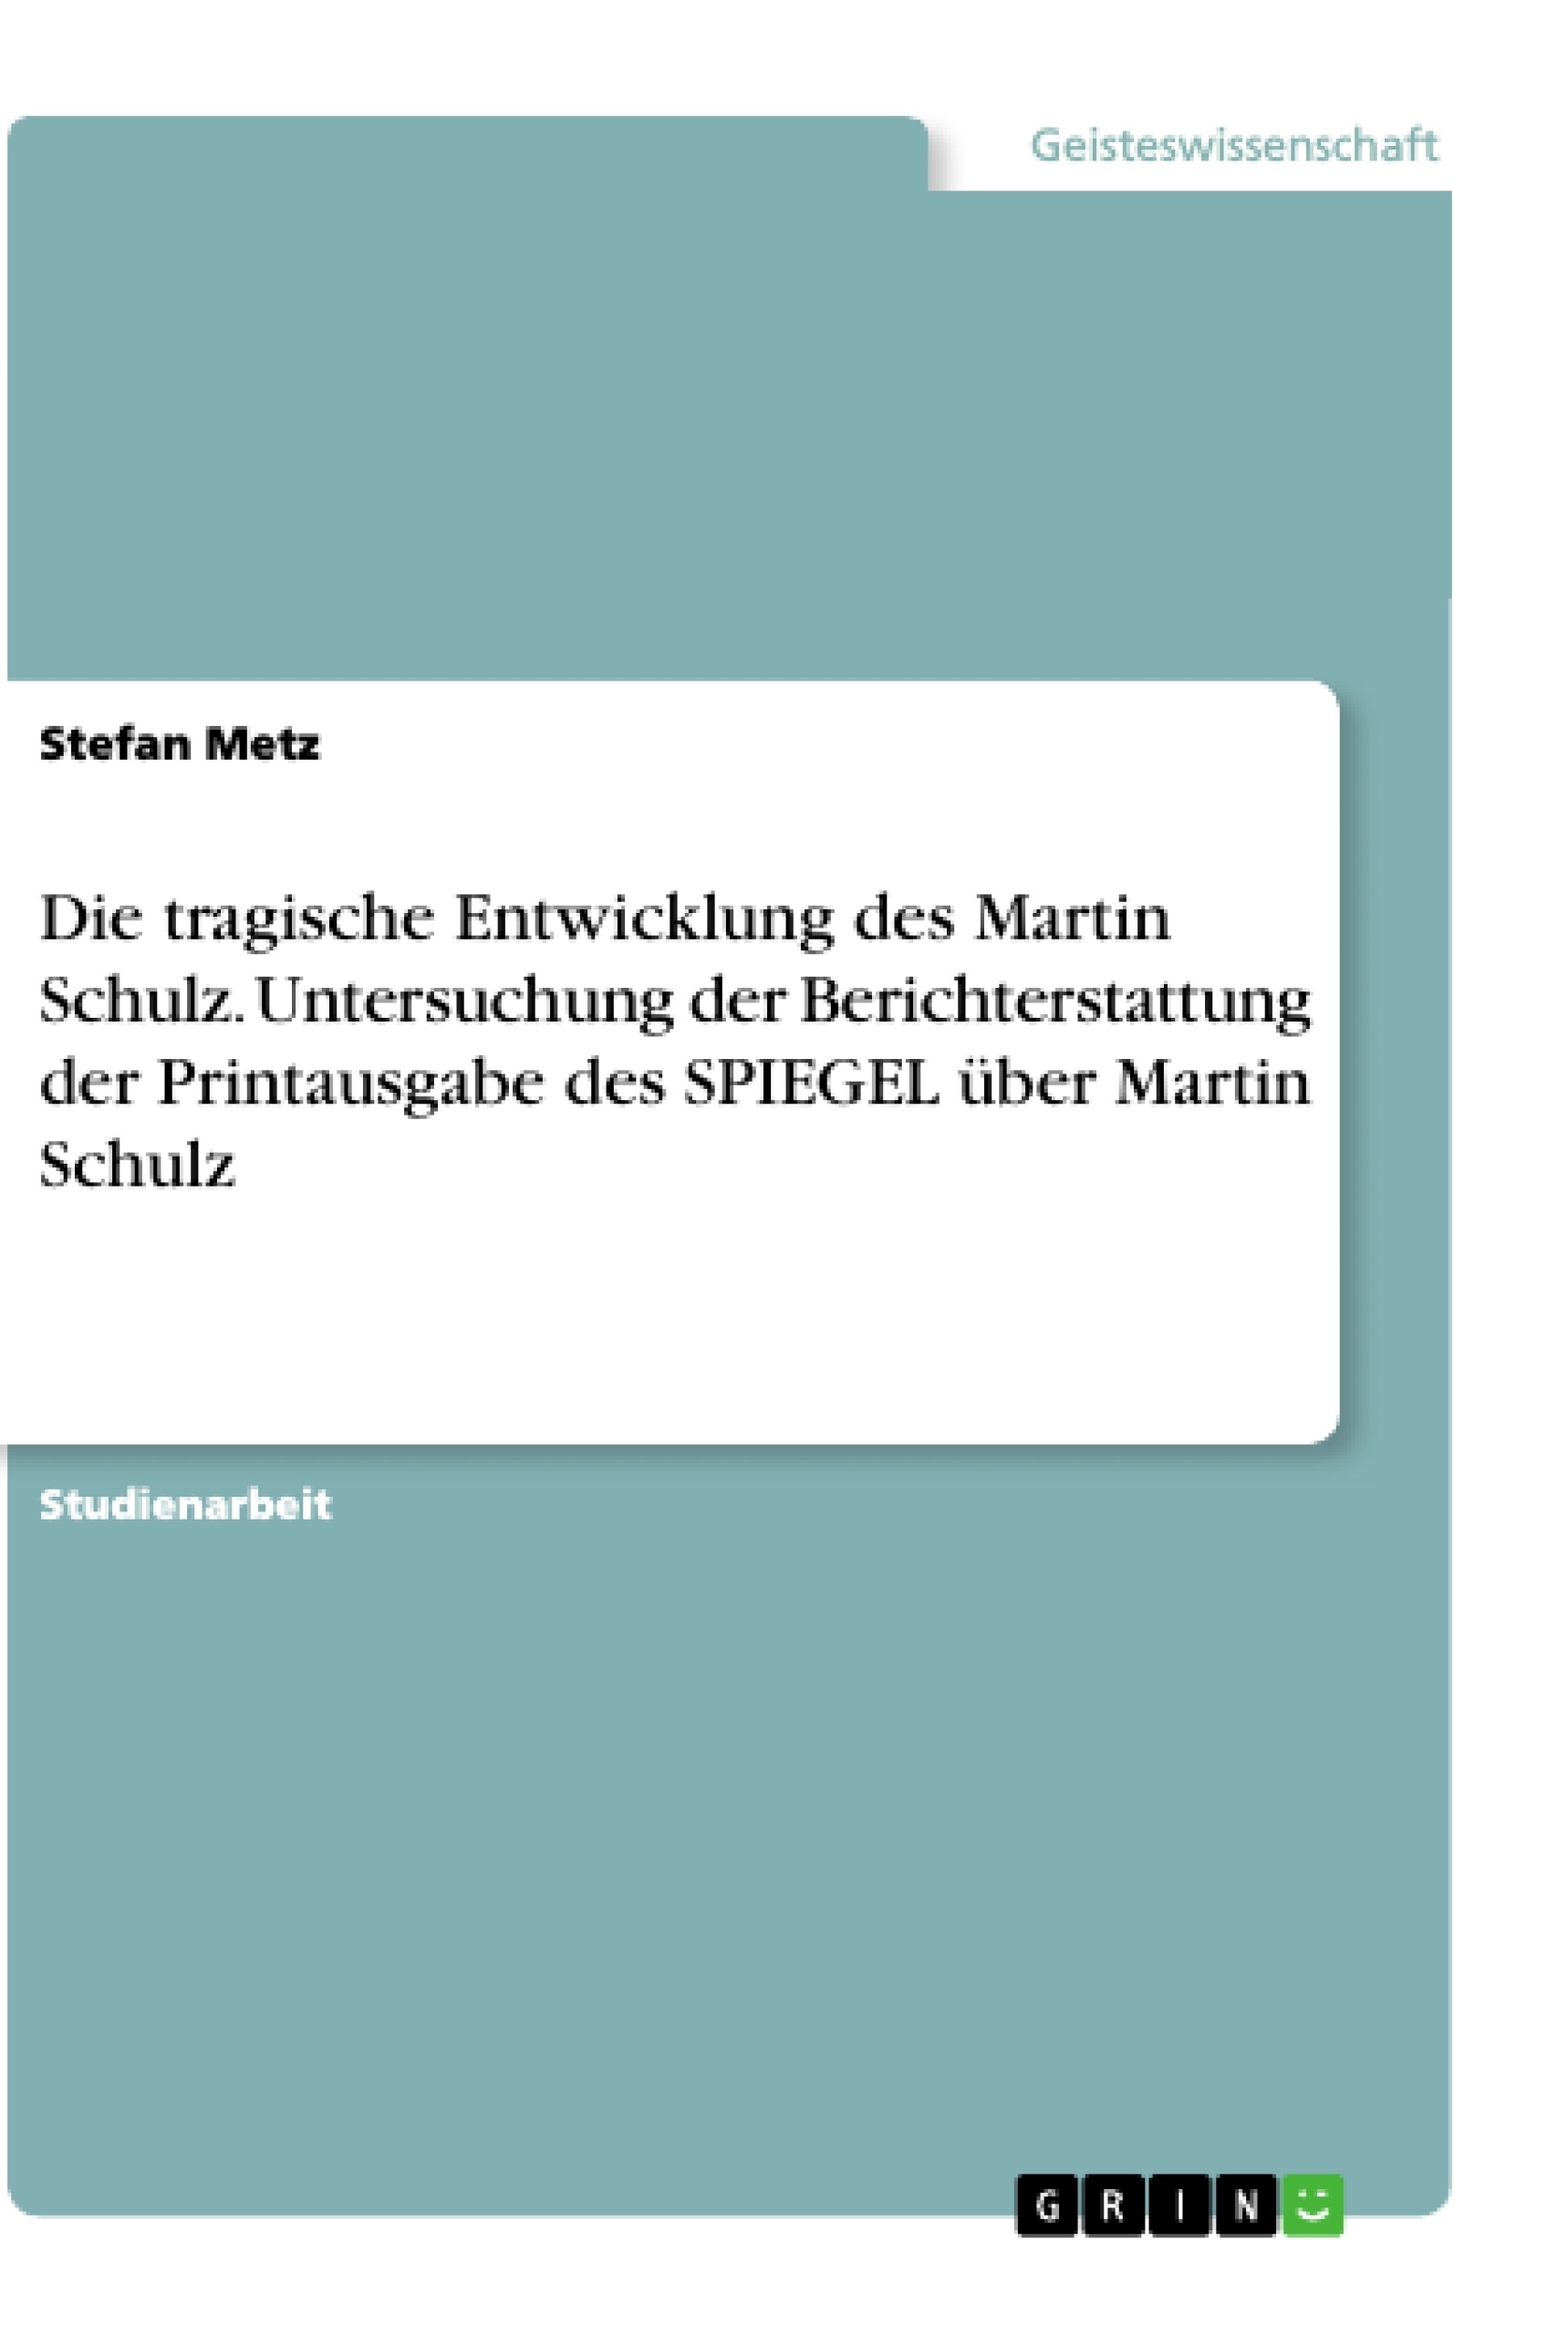 Título: Die tragische Entwicklung des Martin Schulz. Untersuchung der Berichterstattung der Printausgabe des SPIEGEL über Martin Schulz